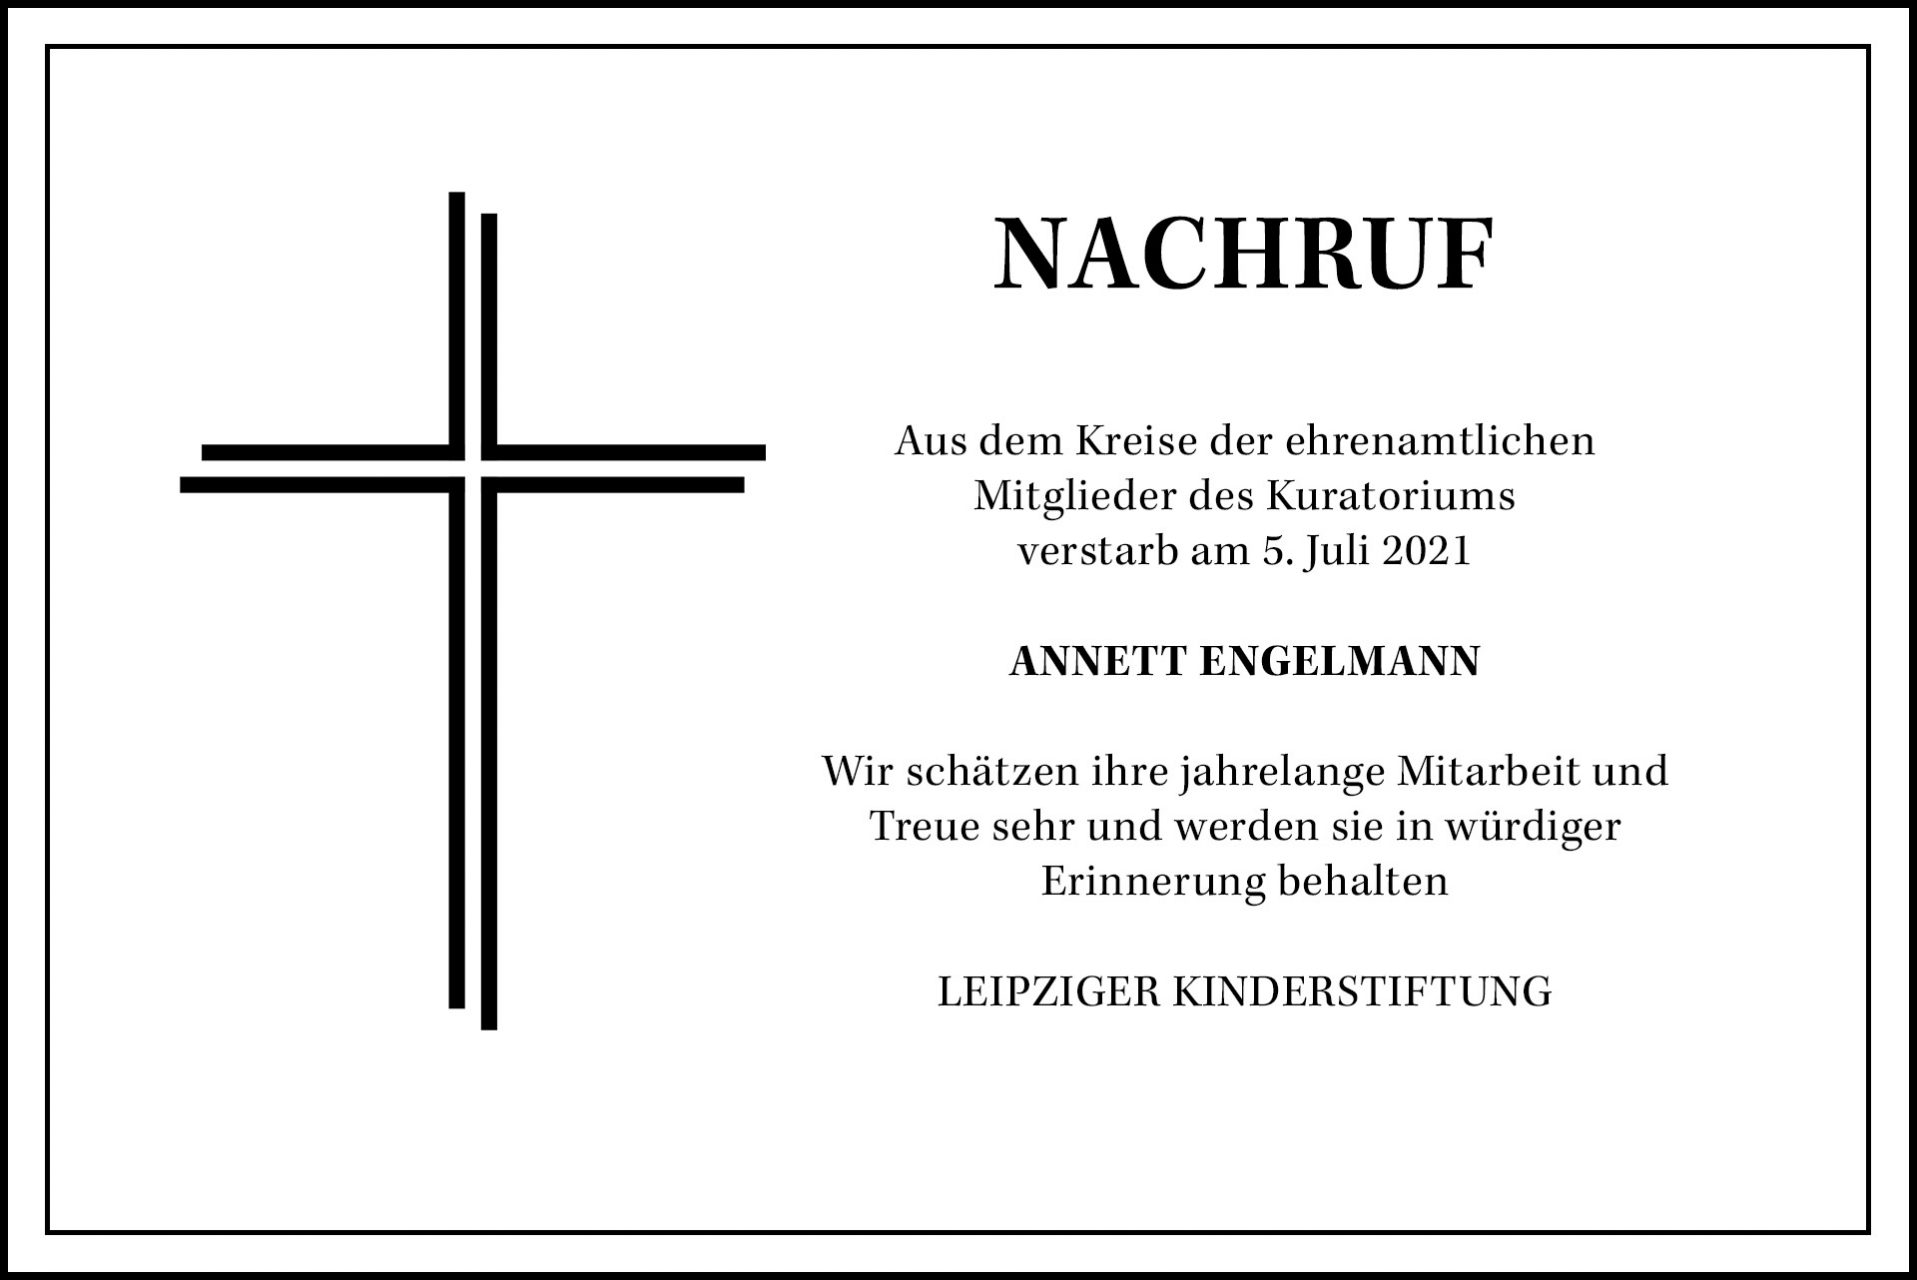 Nachruf - Annett Engelmann - Leipziger Kinderstiftung